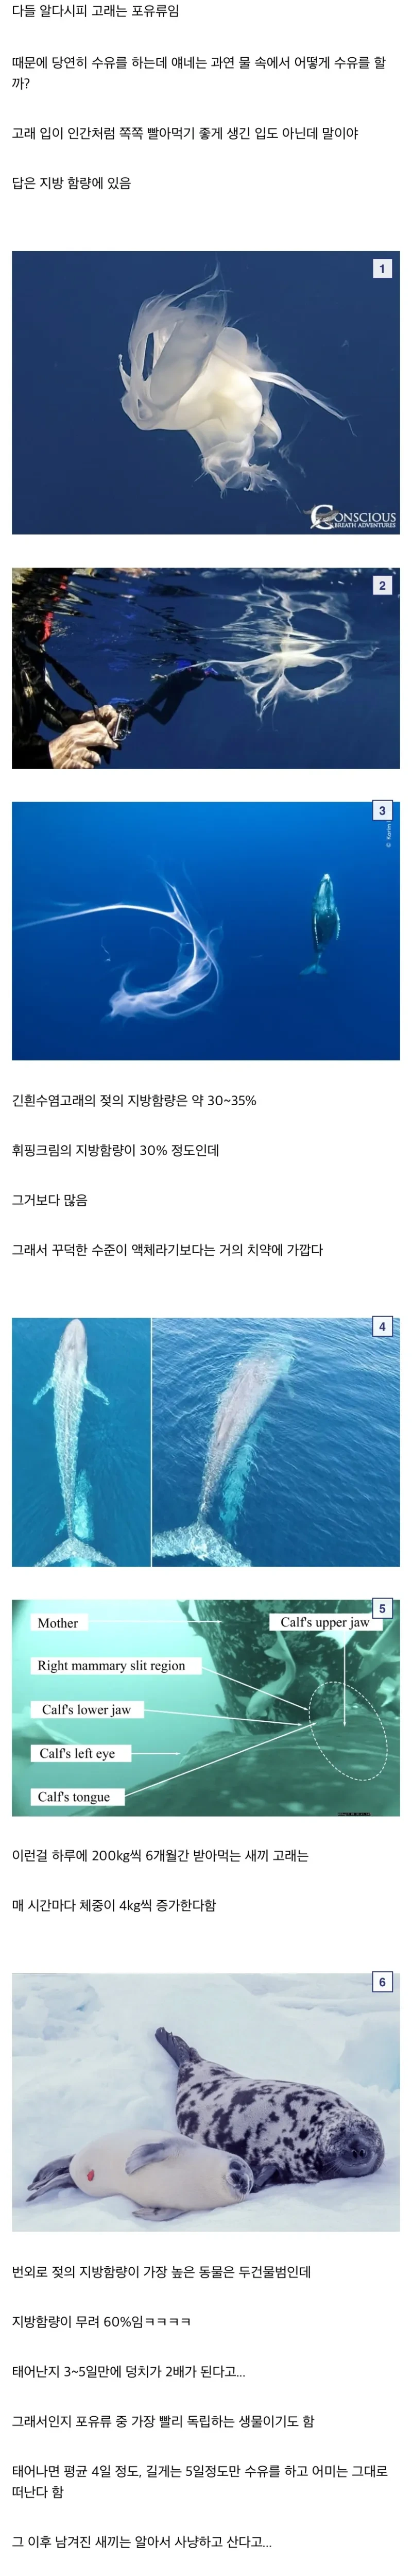 바다에서 수유를 하는 고래 젖과 세상에서 가장 진한 젖